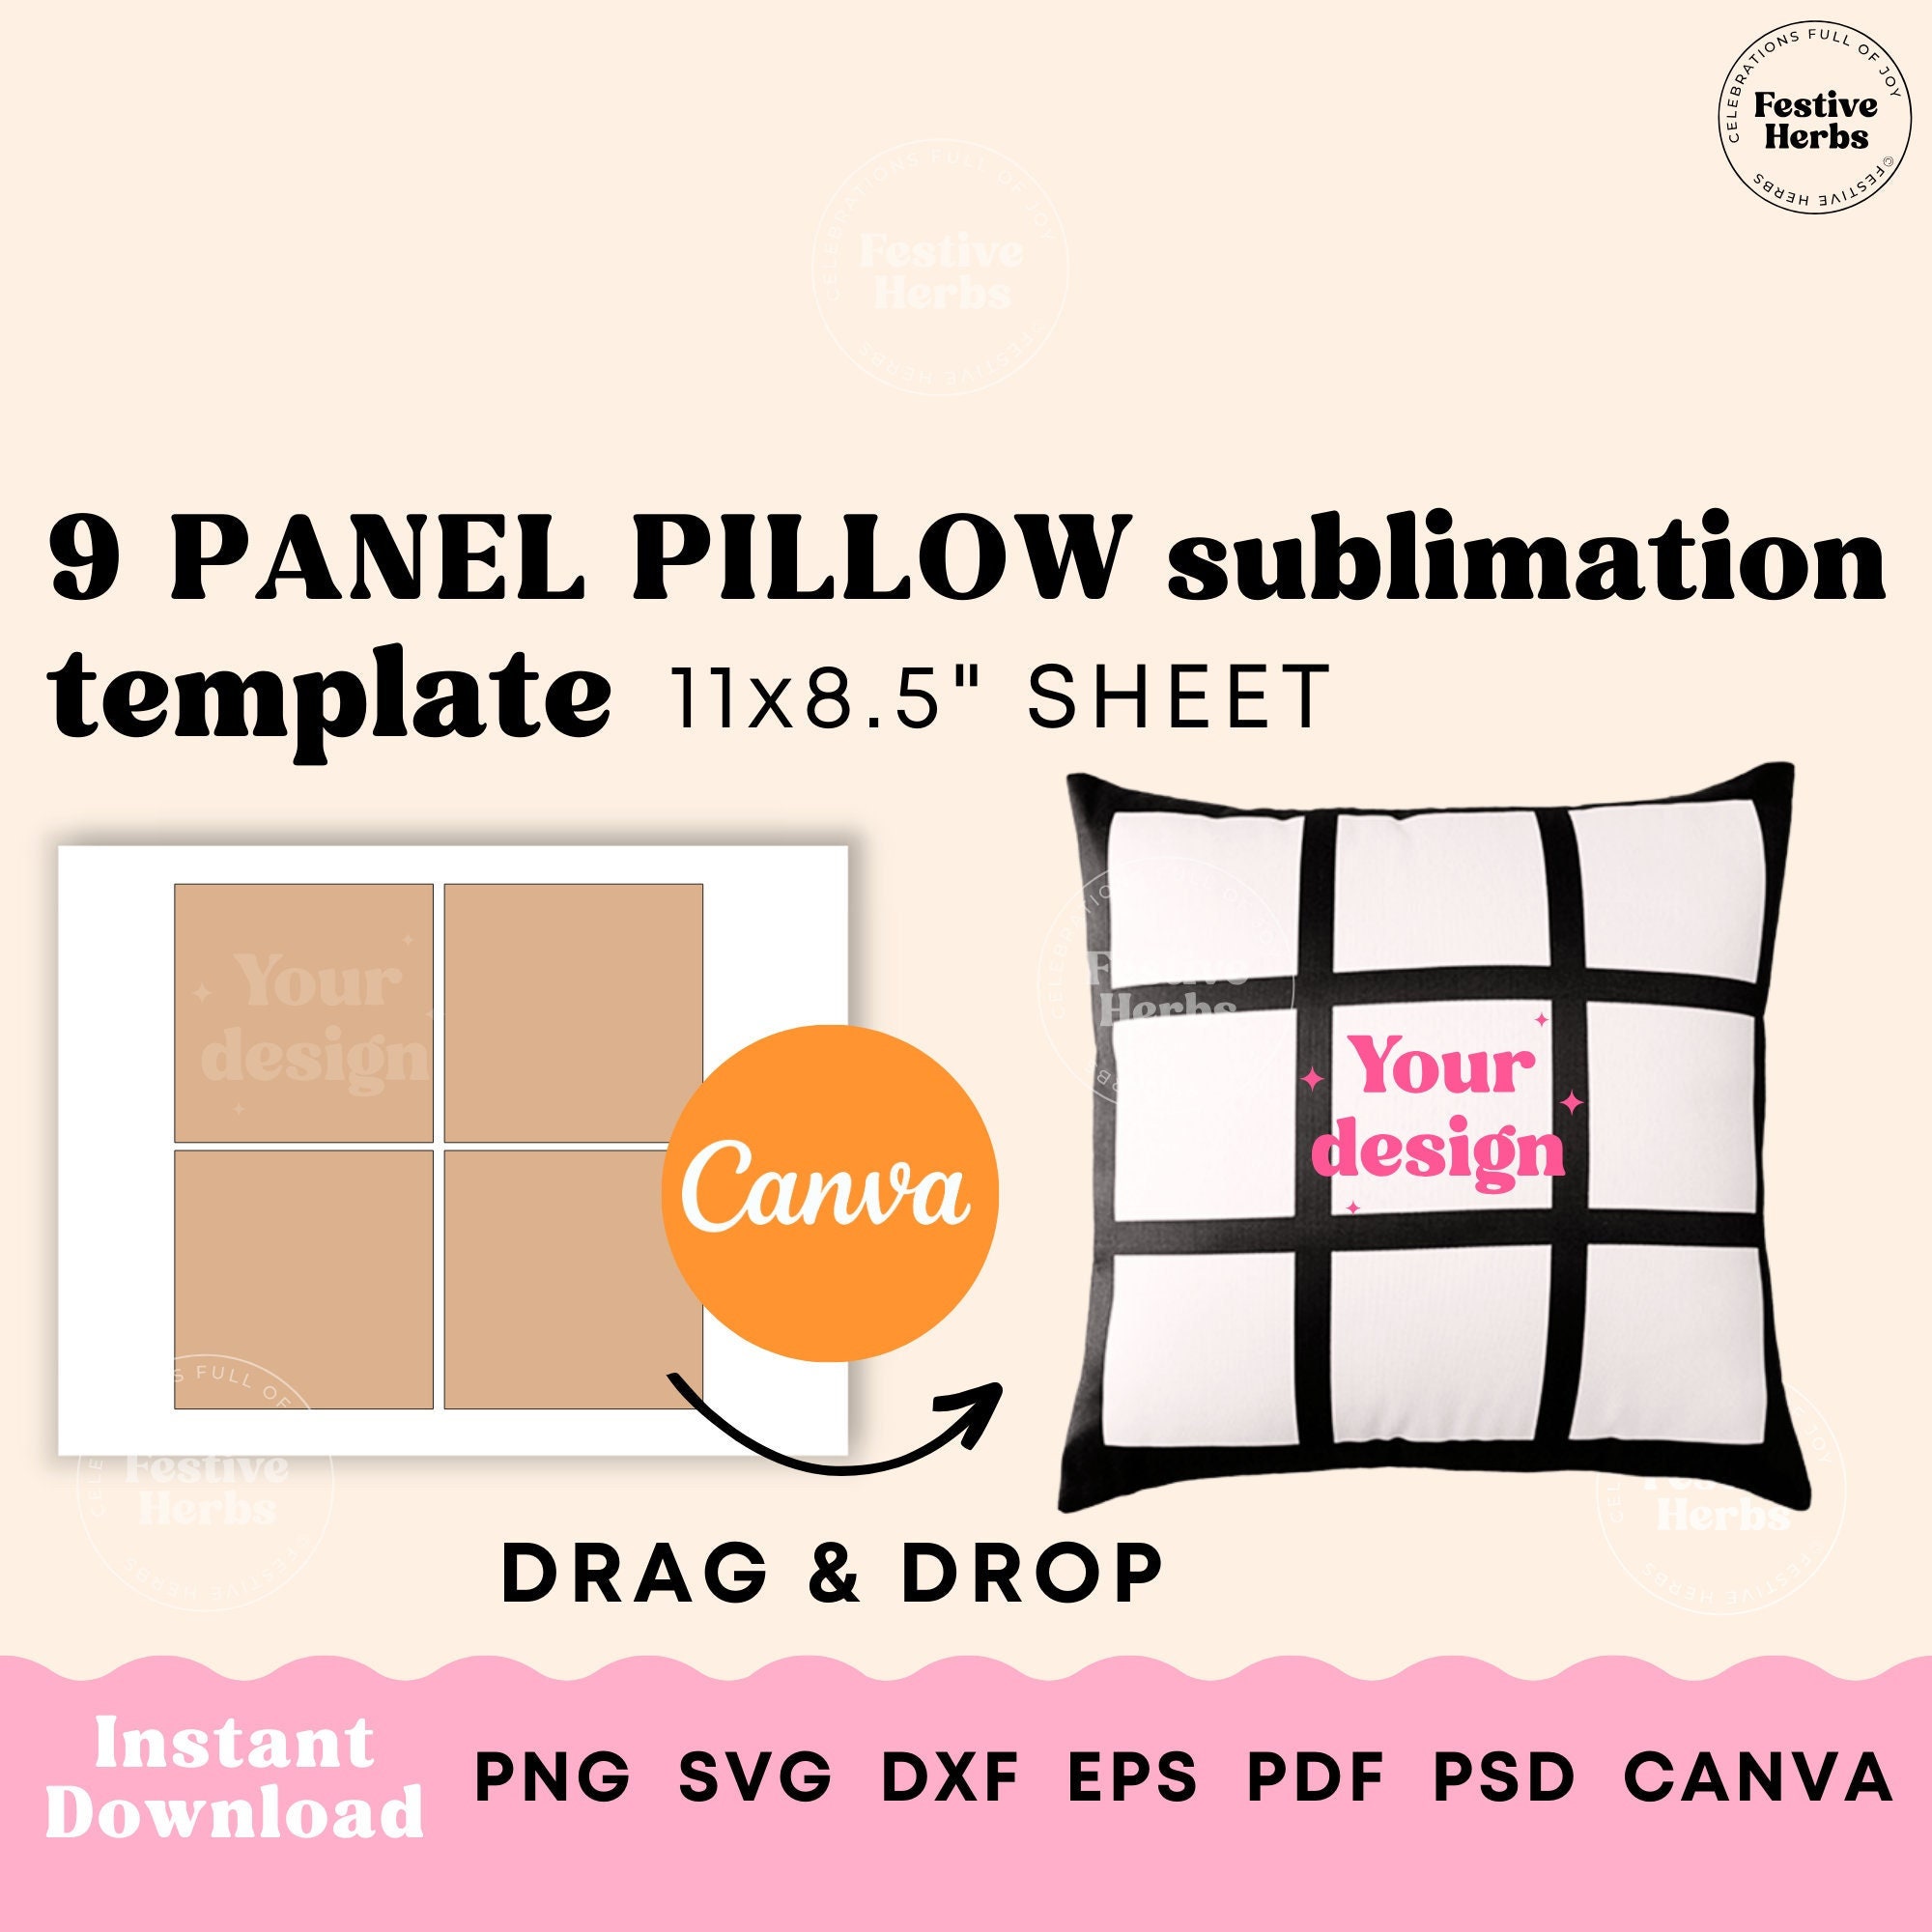 20 Panel Love Sublimation Blanket – Buy Let's get Crafty Blanks LLC